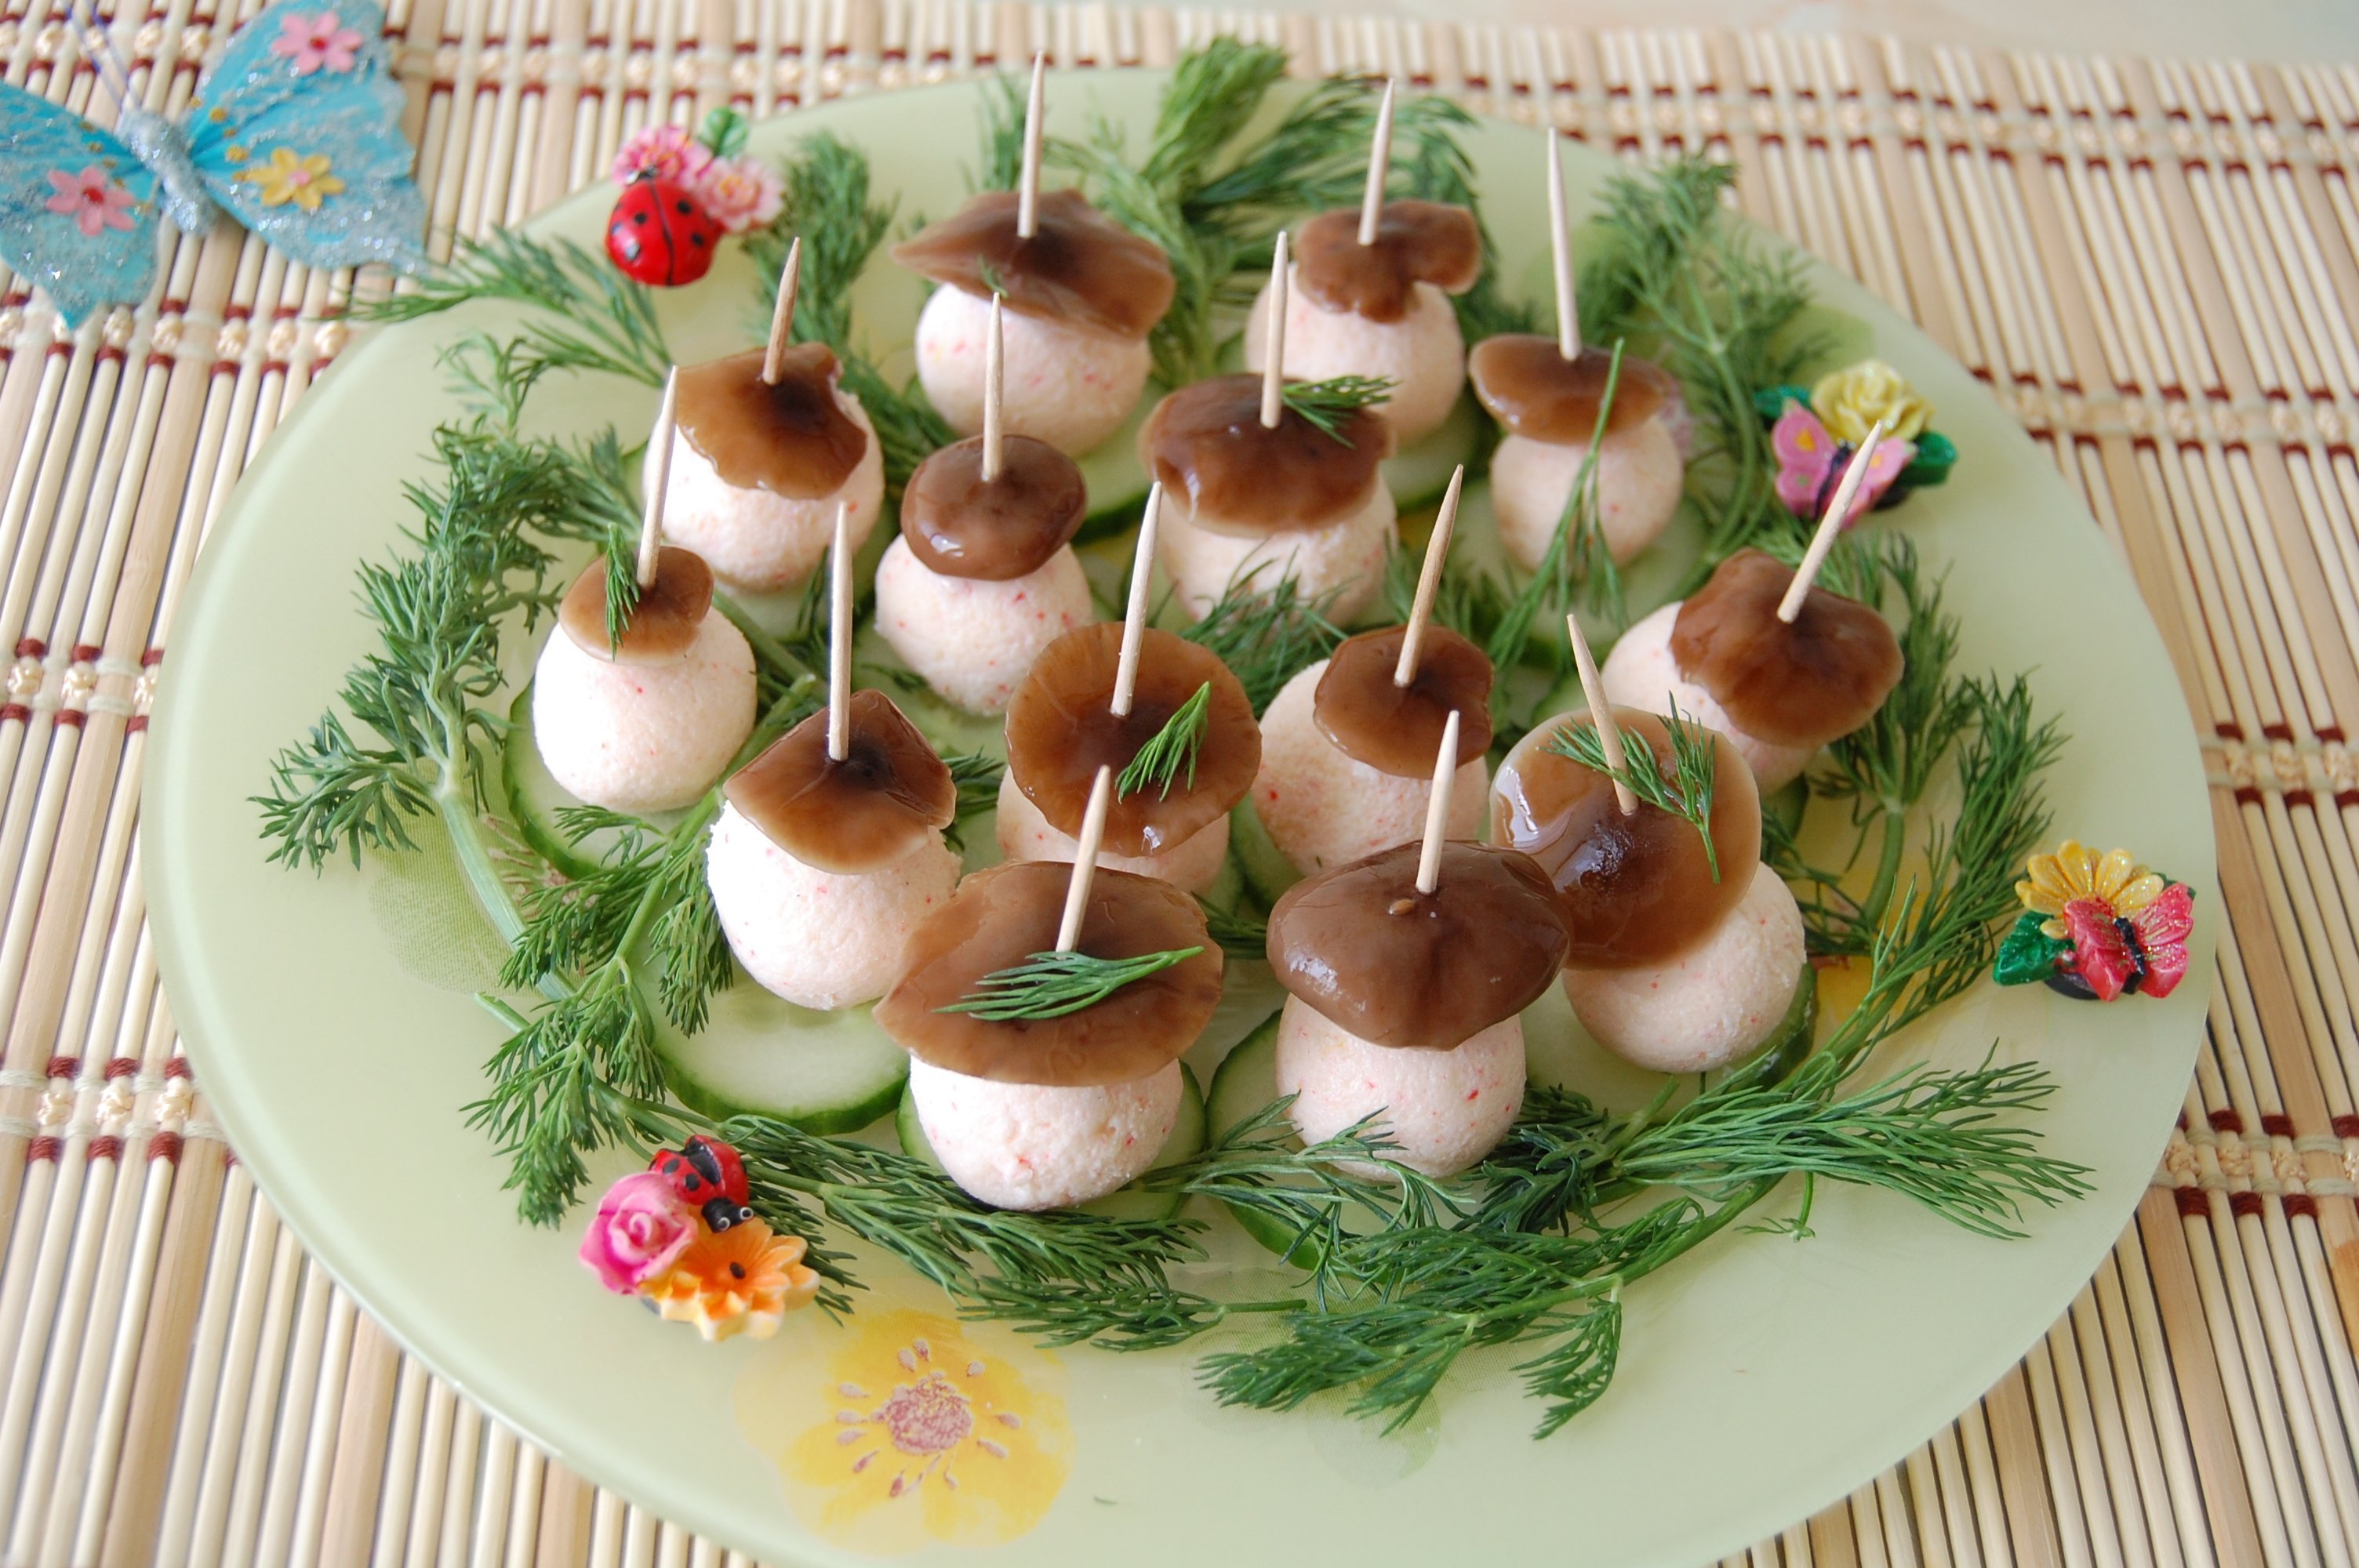 Салат с маринованными опятами 11 лучших рецептов - грибы собираем